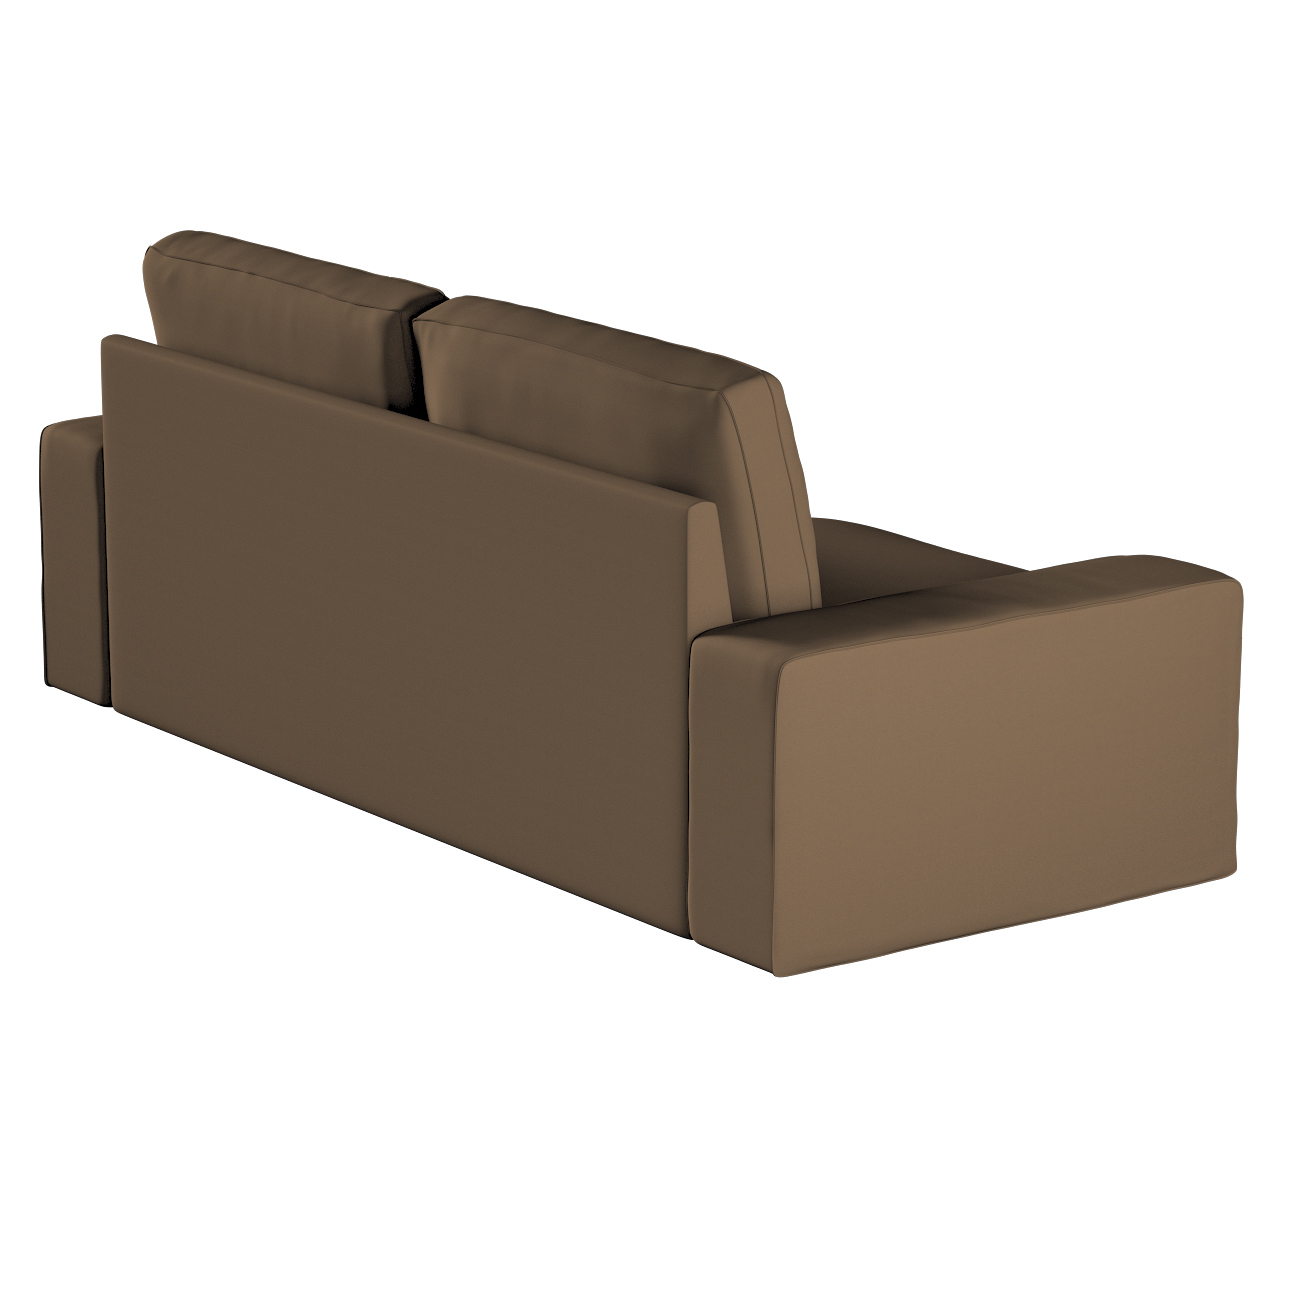 Bezug für Kivik 3-Sitzer Sofa, mocca, Bezug für Sofa Kivik 3-Sitzer, Cotton günstig online kaufen